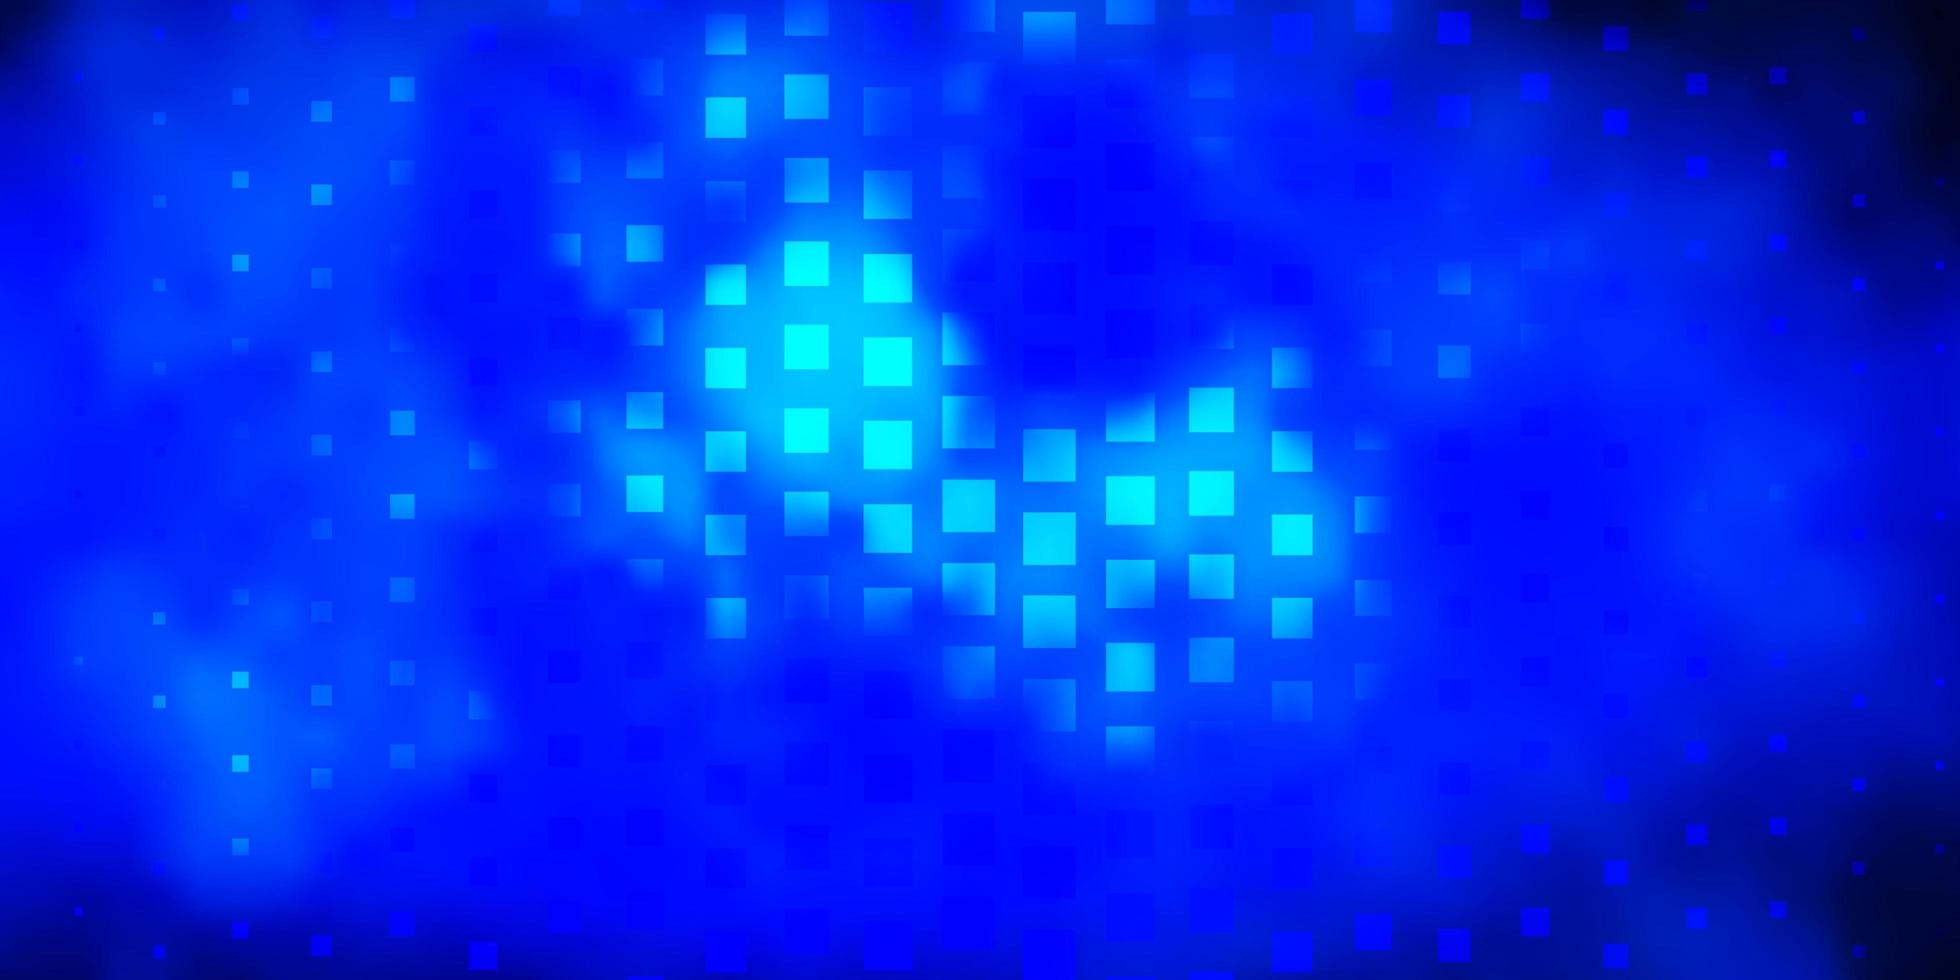 Fondo de vector azul oscuro con rectángulos Ilustración de degradado abstracto con diseño de rectángulos de colores para la promoción de su negocio